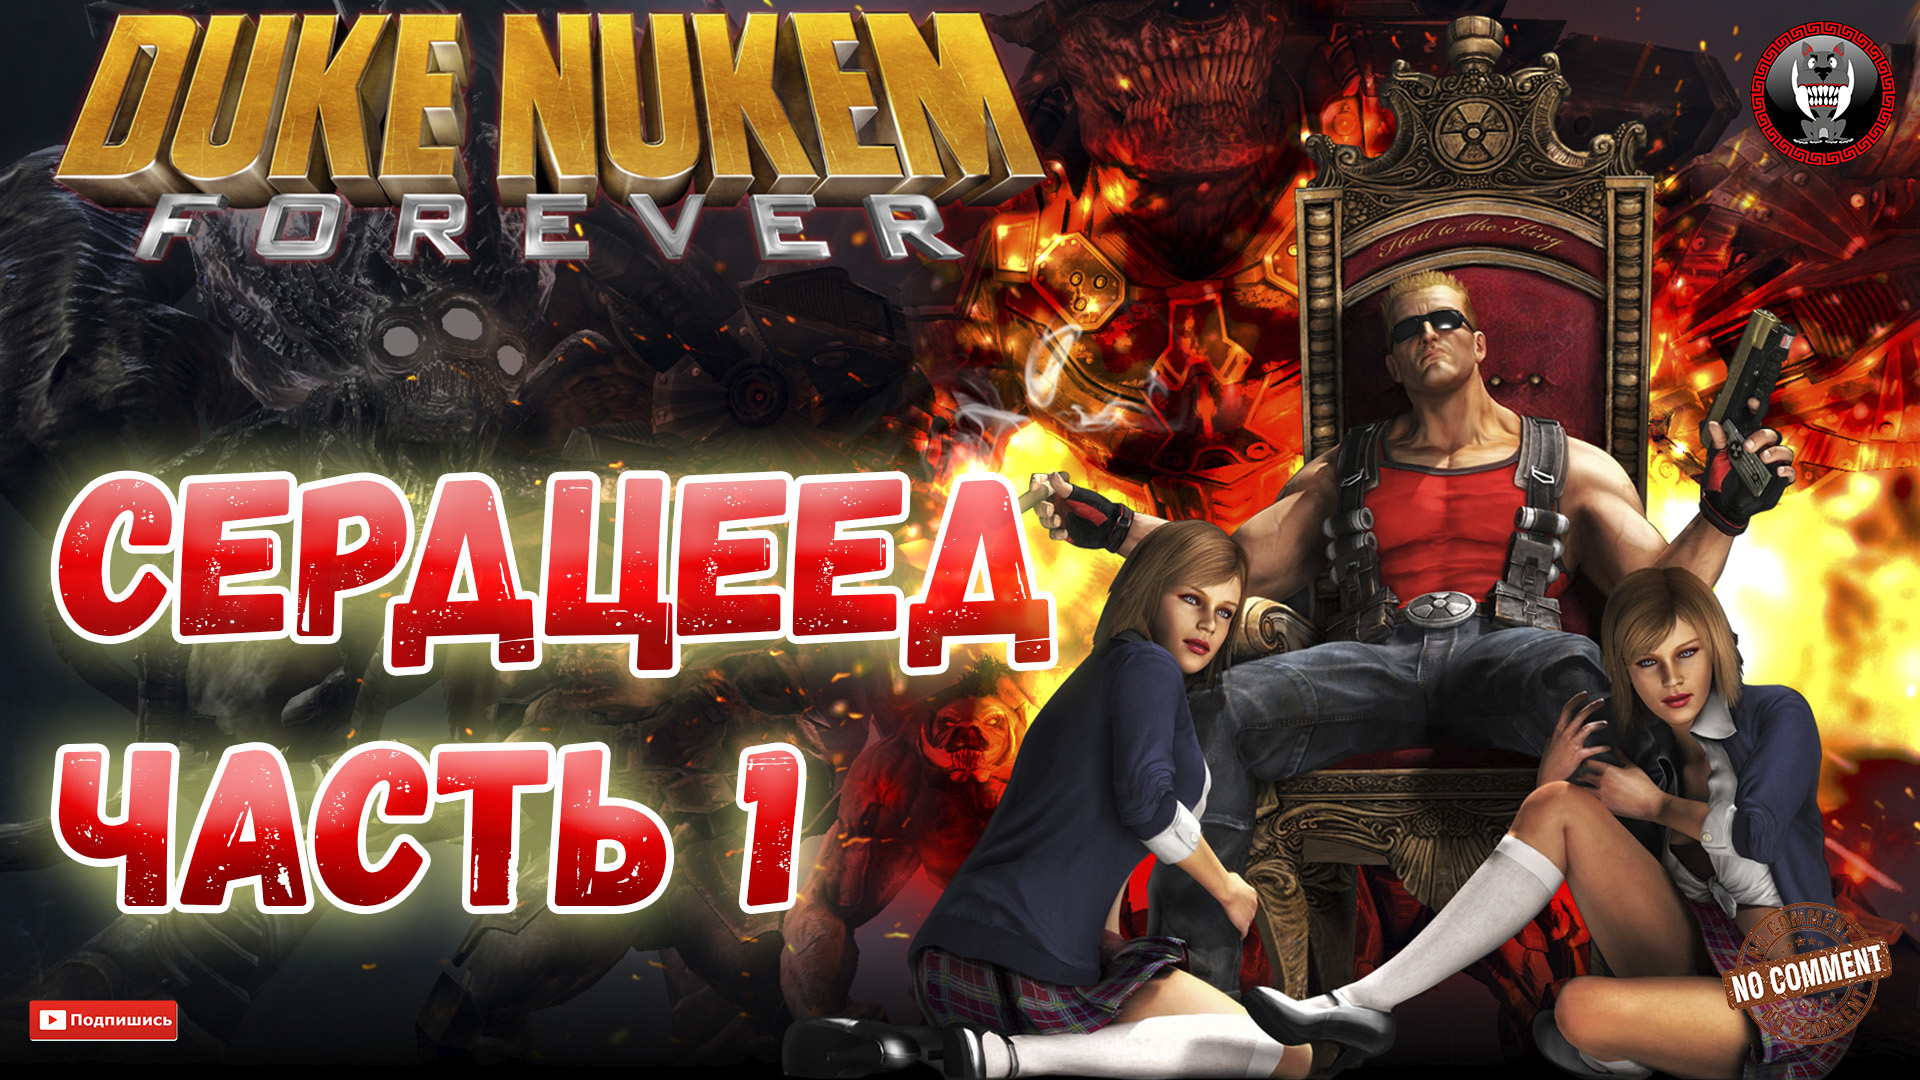 Duke Nukem Forever - Сердцеед Часть 1 - Сюжетное прохождение без комментариев